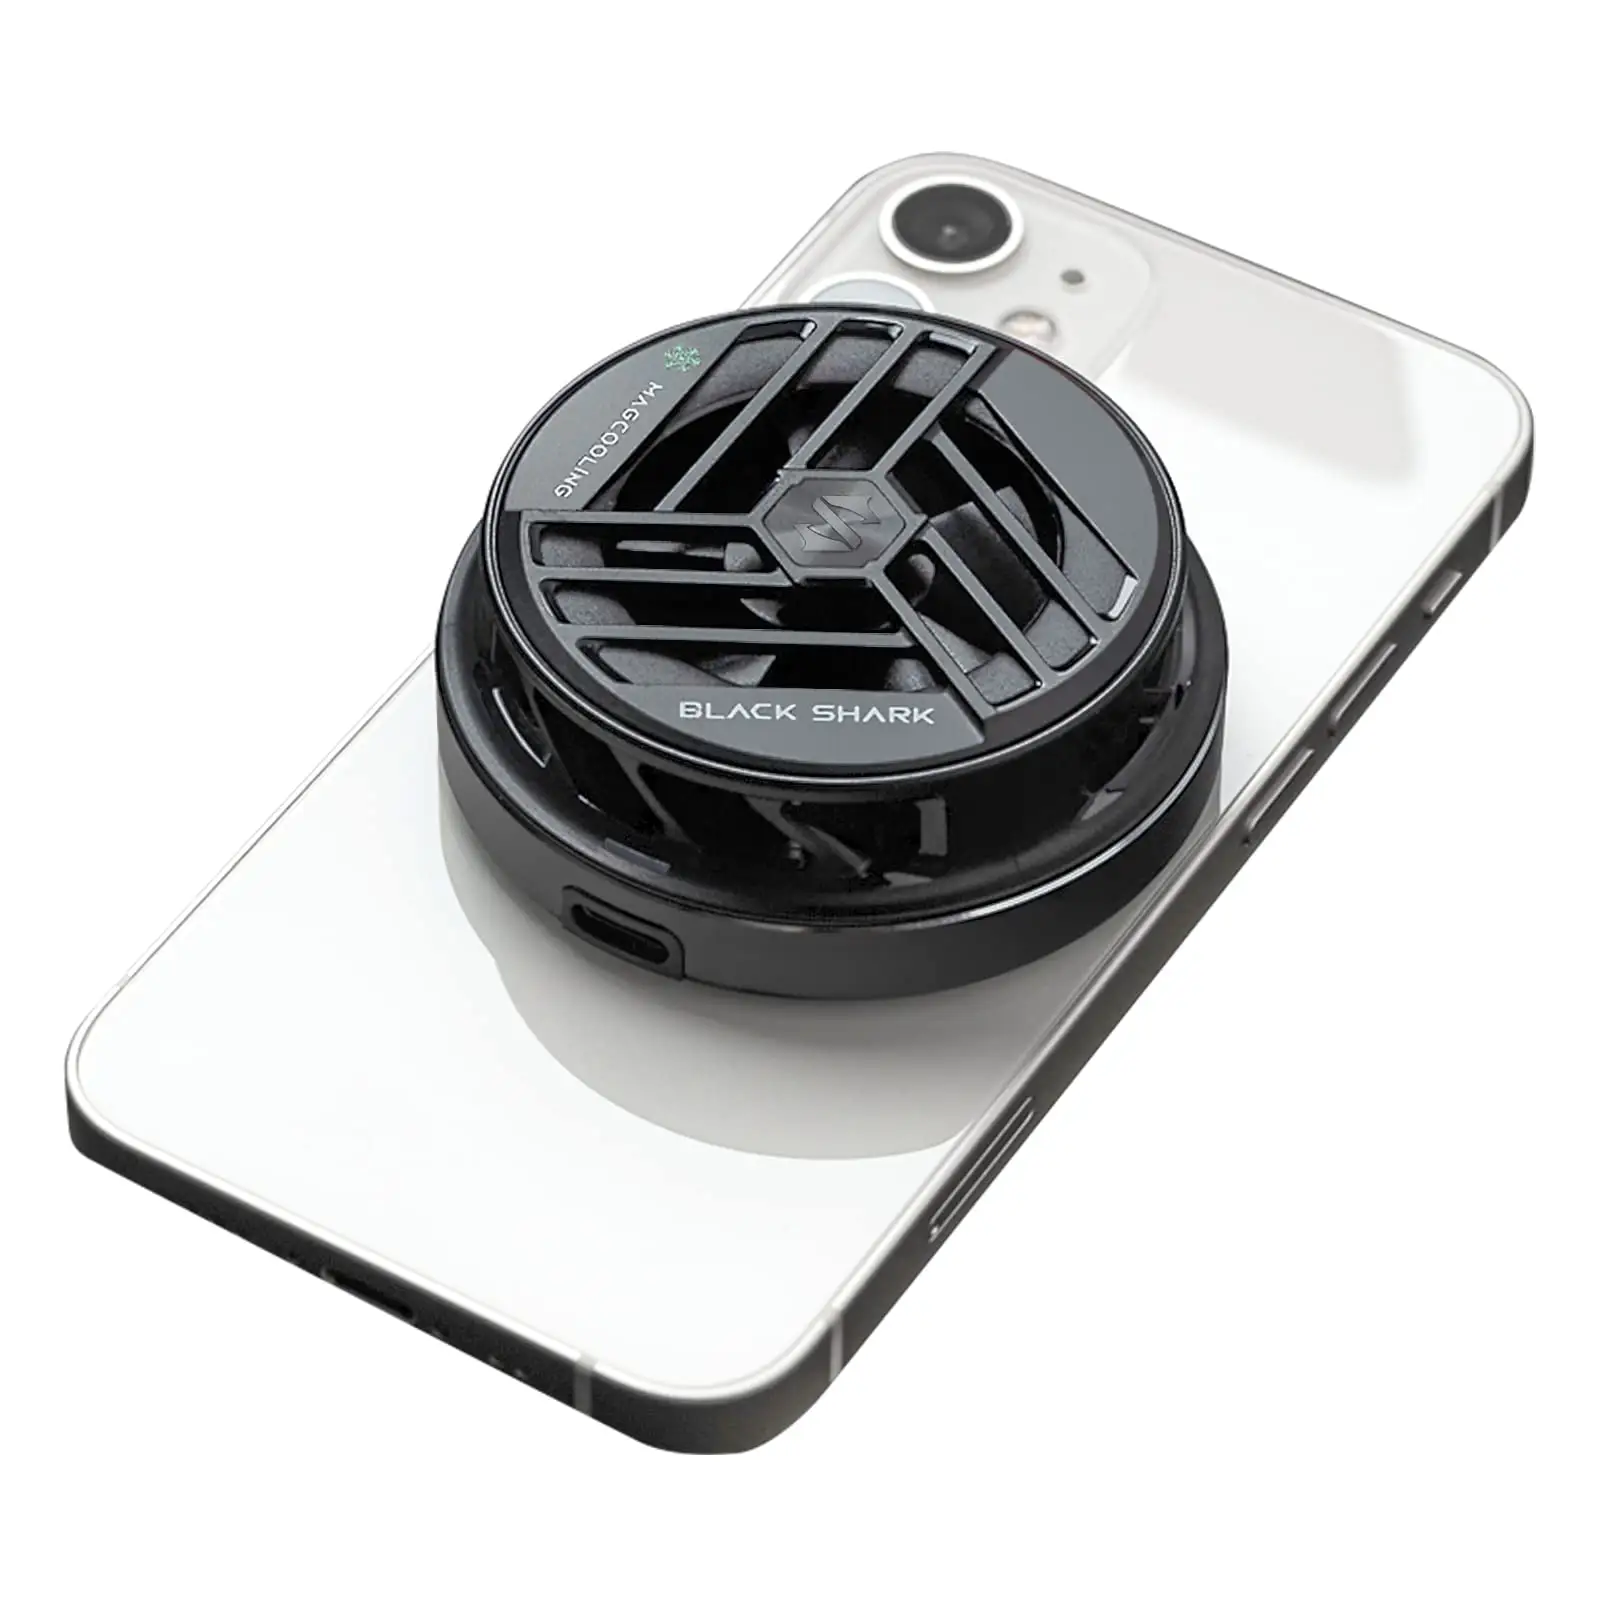 Raffreddamento a semiconduttore per Tablet Android iPad ventola di raffreddamento per telefono cellulare portatile radiatore per telefono nero squalo magnetico